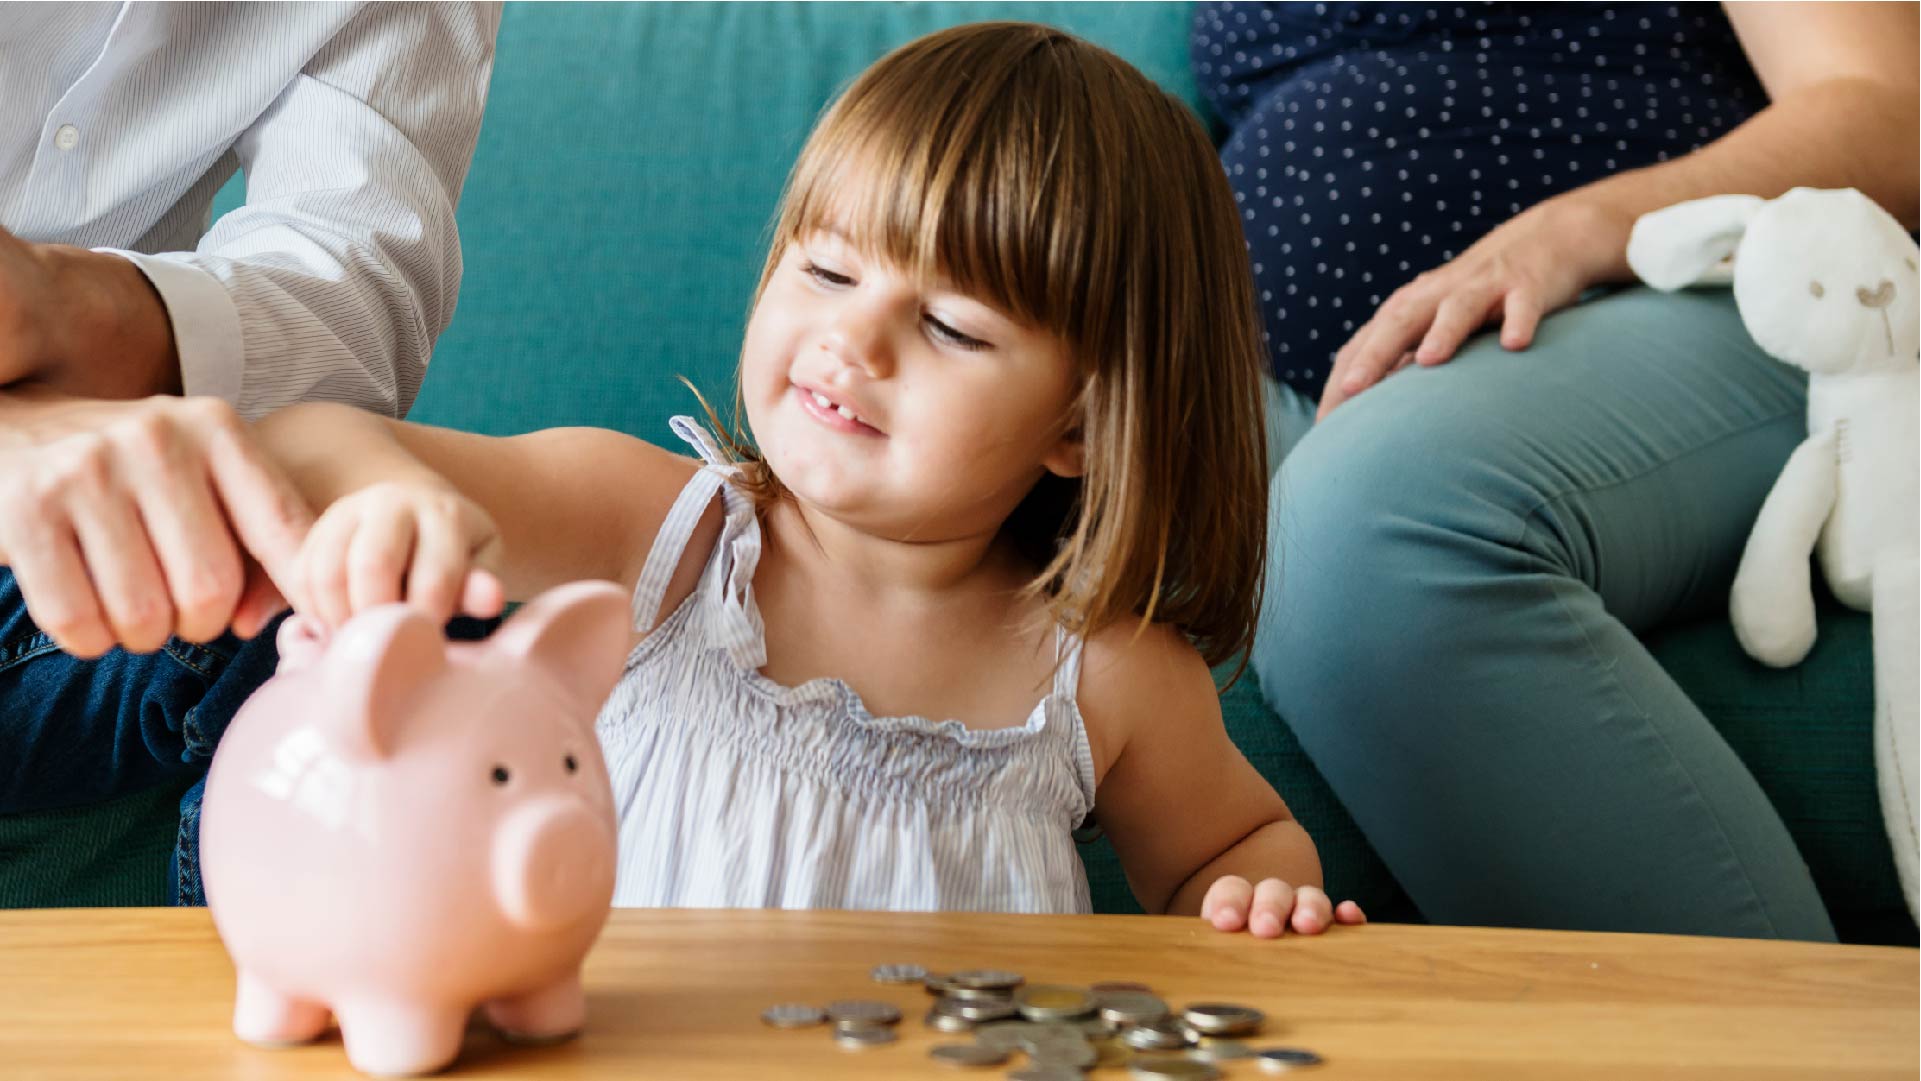 Vergezeld van haar ouders, steekt een meisje muntstukken in een spaarpot